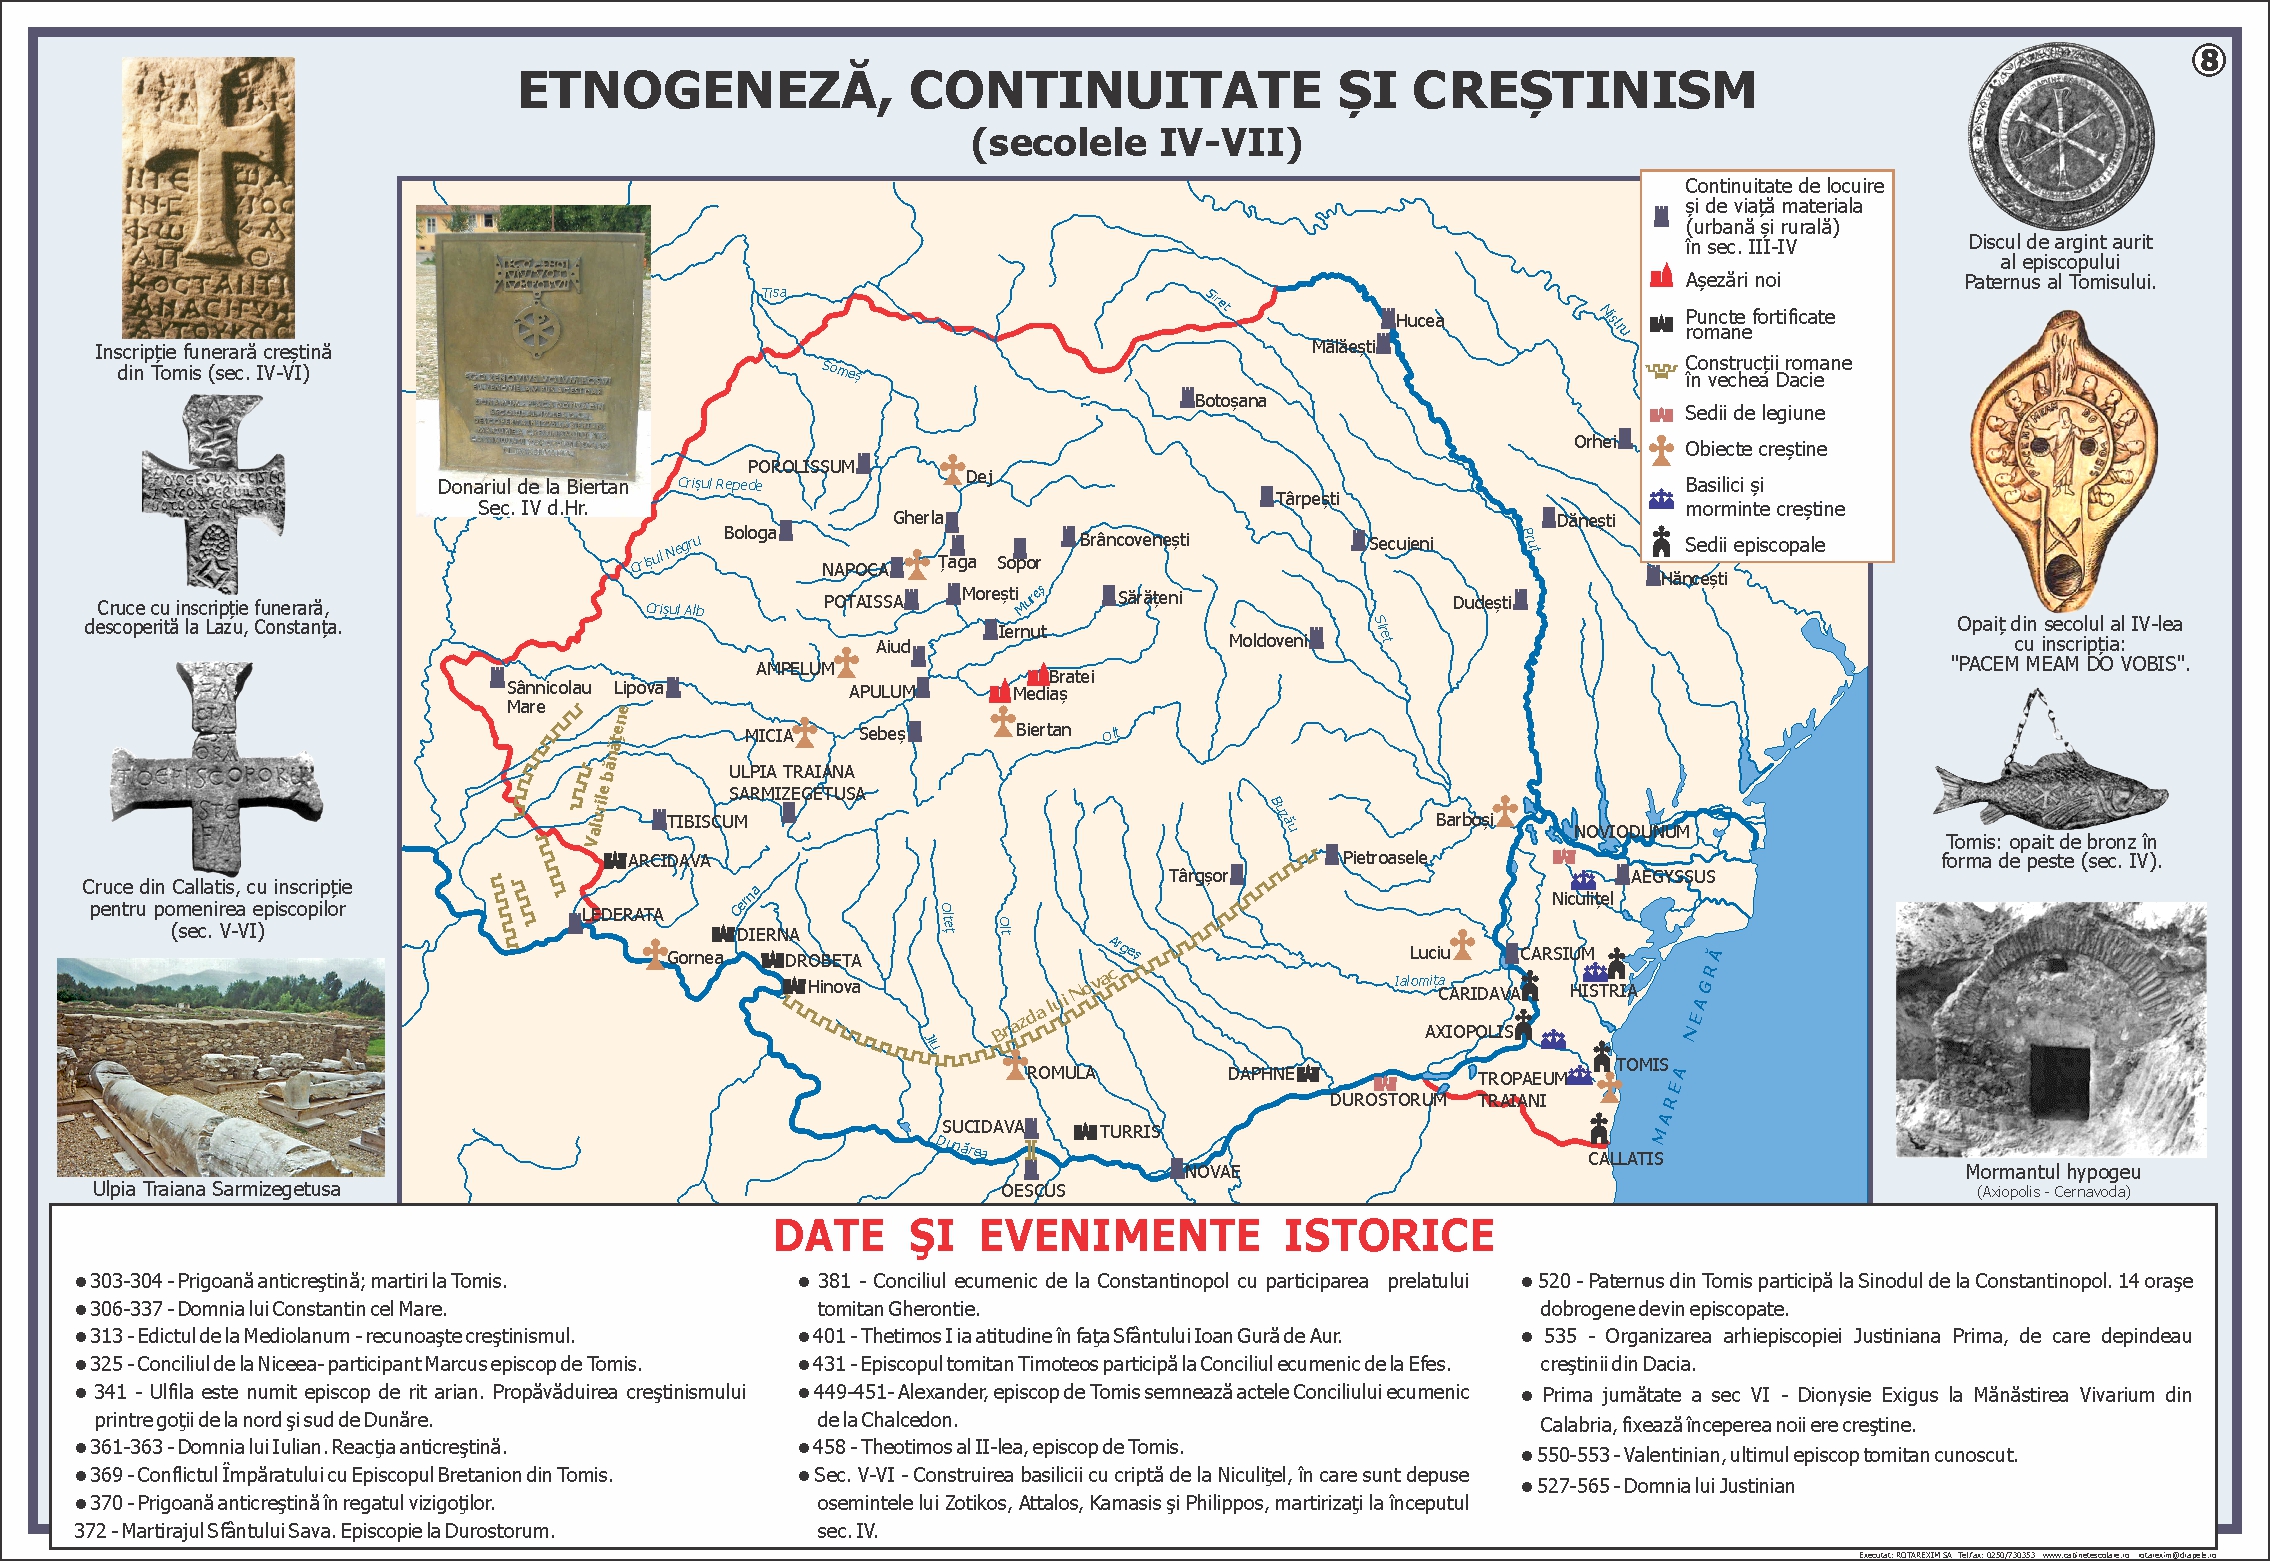 Etnogeneza, continuitate si crestinism (sec. IV-VII)